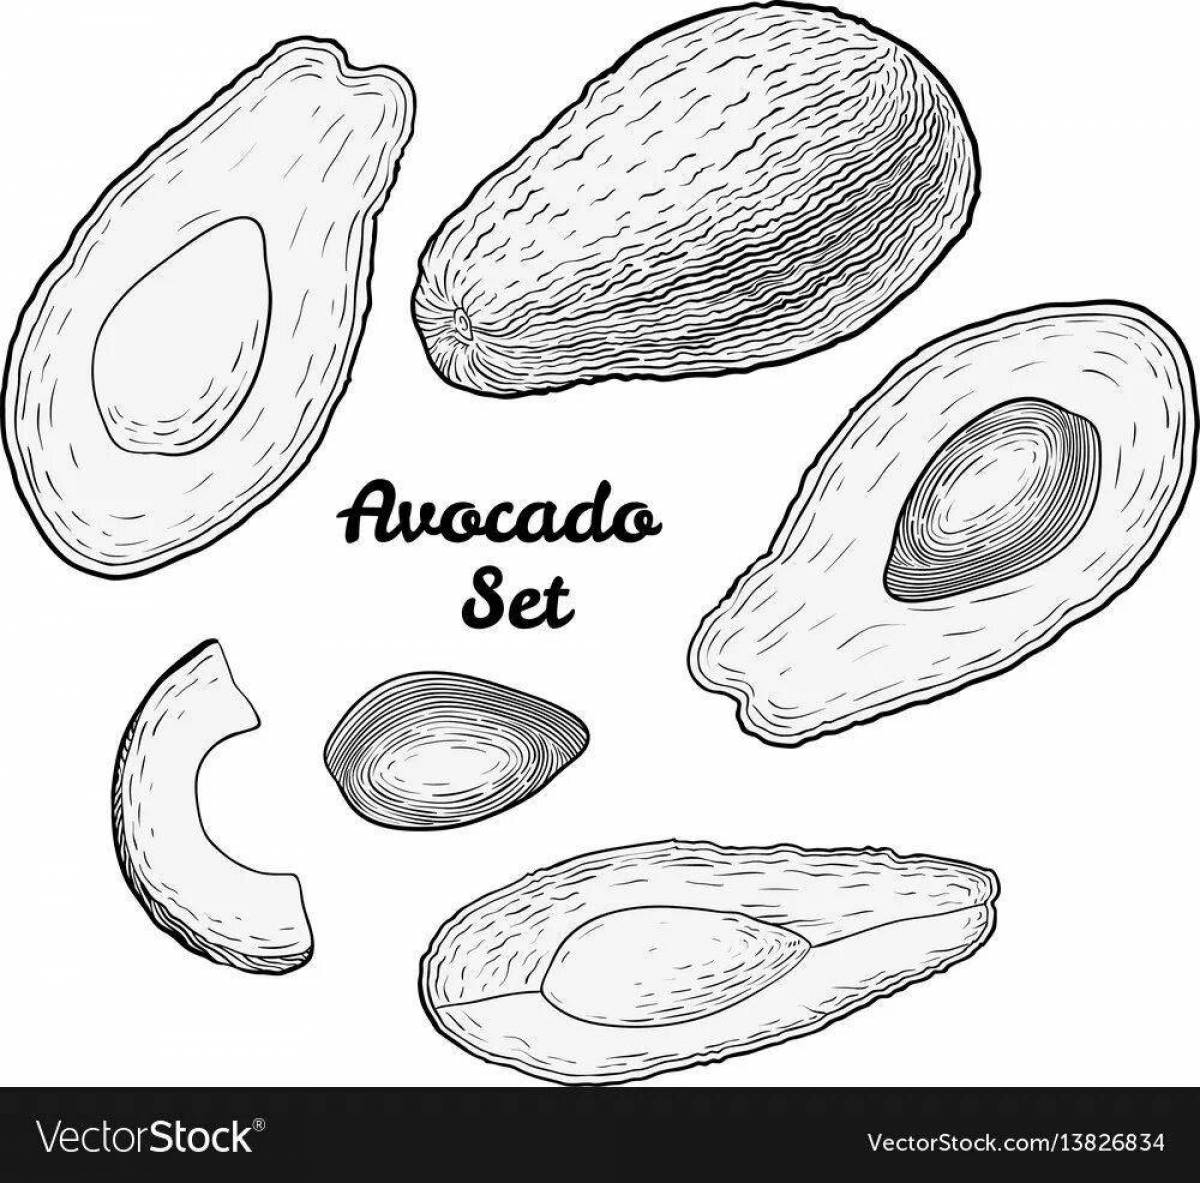 Small live avocados